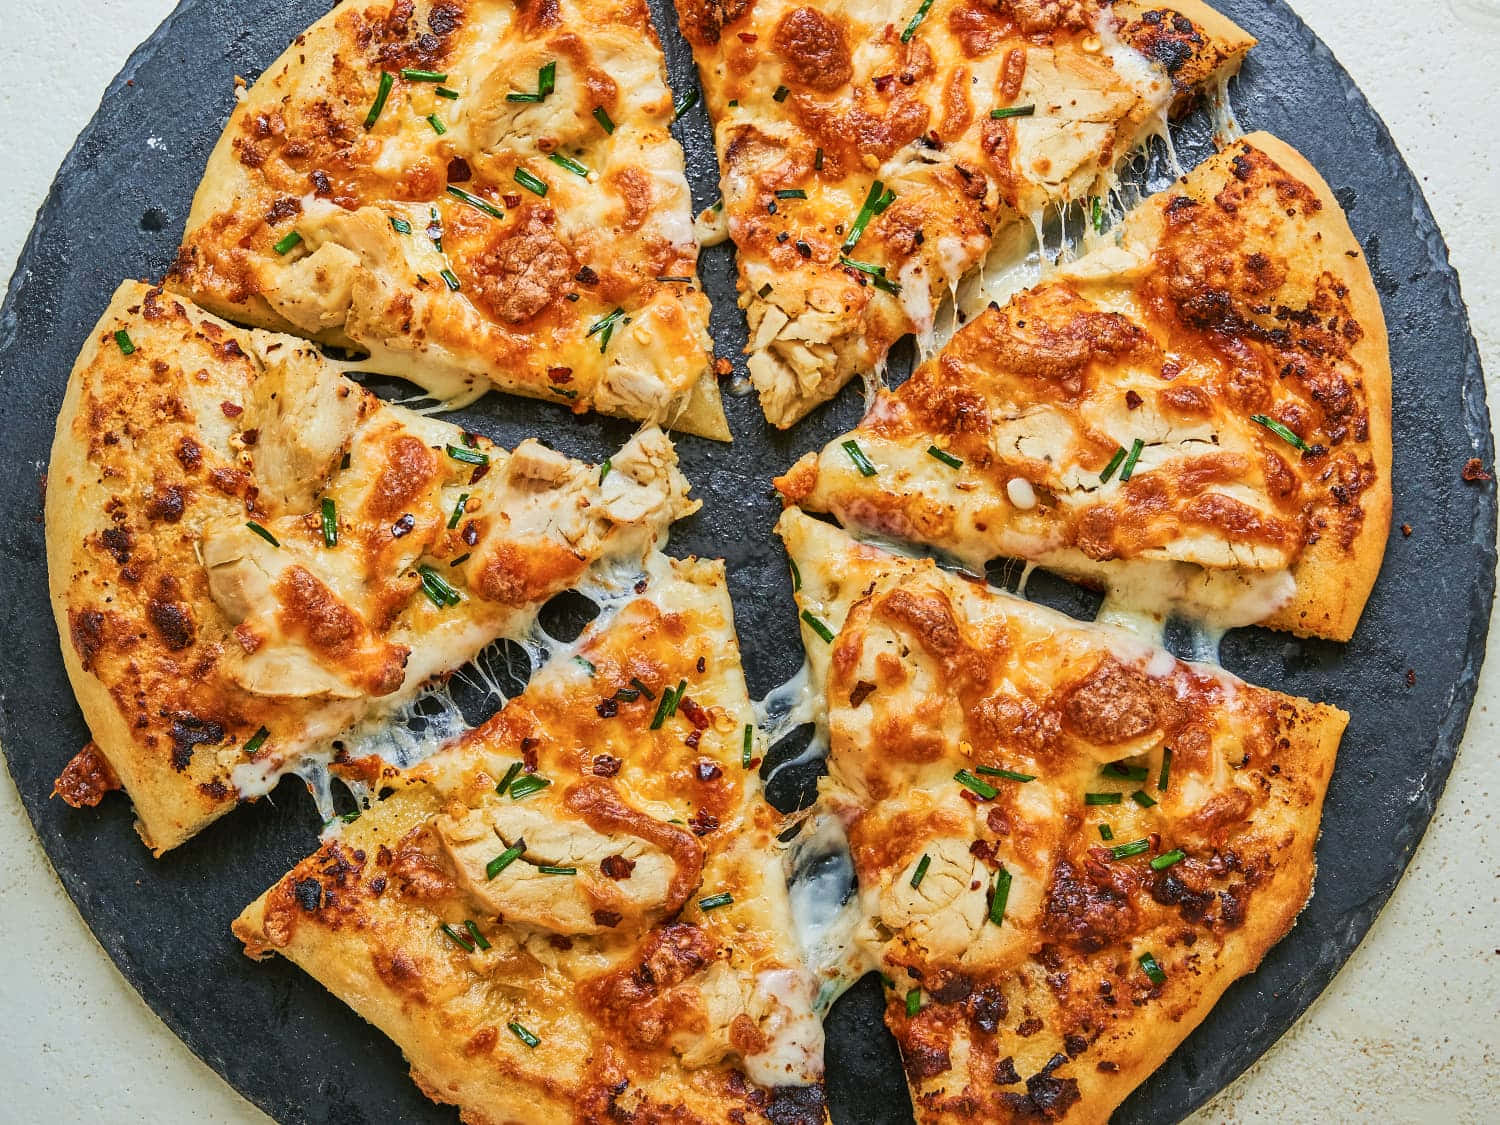 Provaquesta Deliziosa Pizza Margherita Con Tutti I Condimenti, Un Classico Italiano.